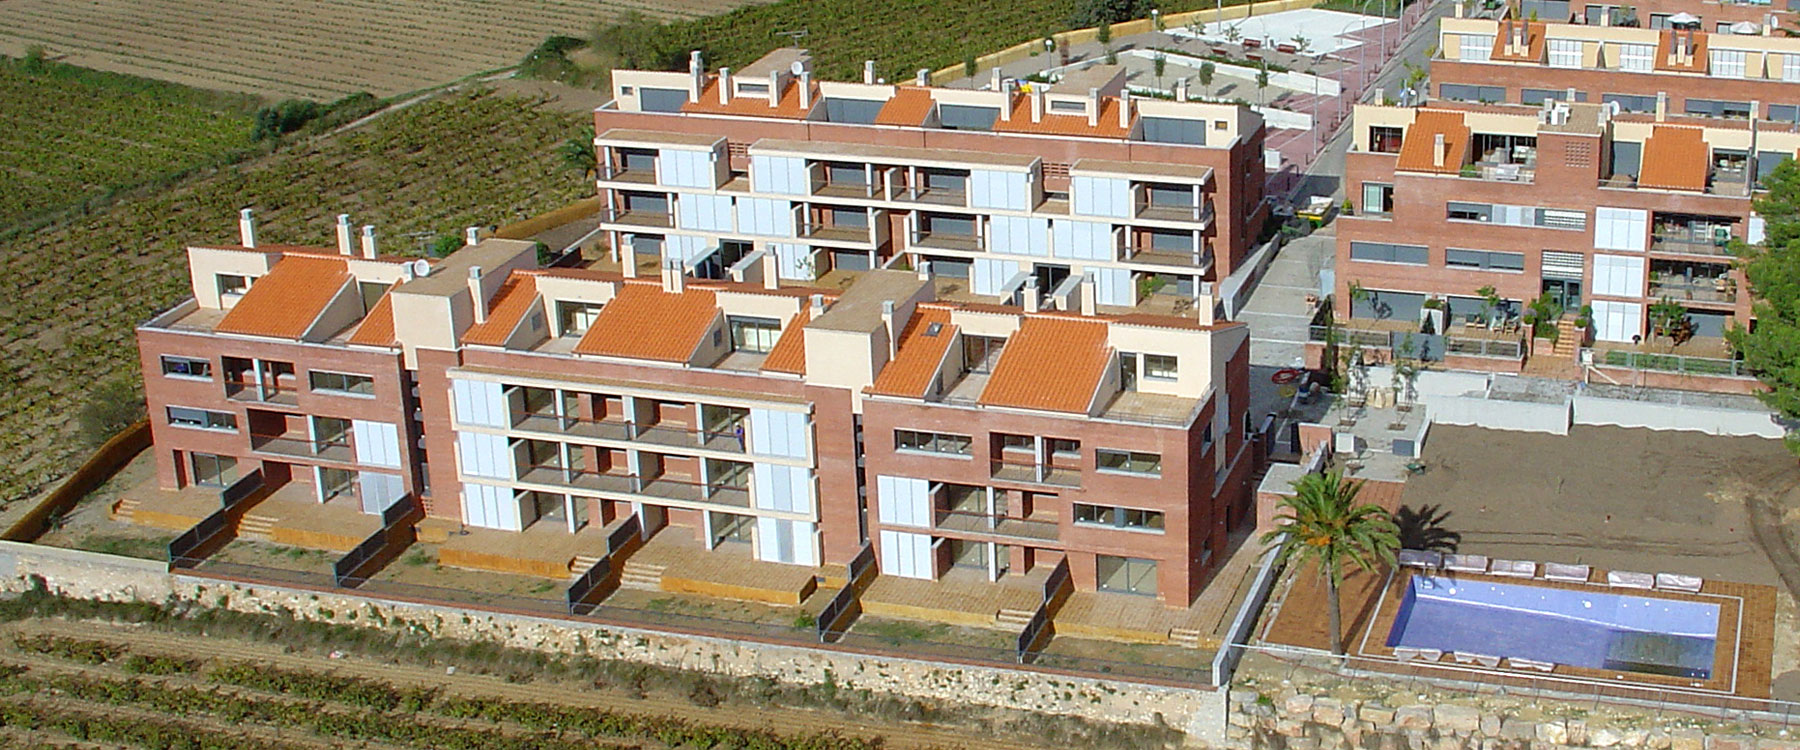 Urbanización Moja – Vilafranca del Penedès